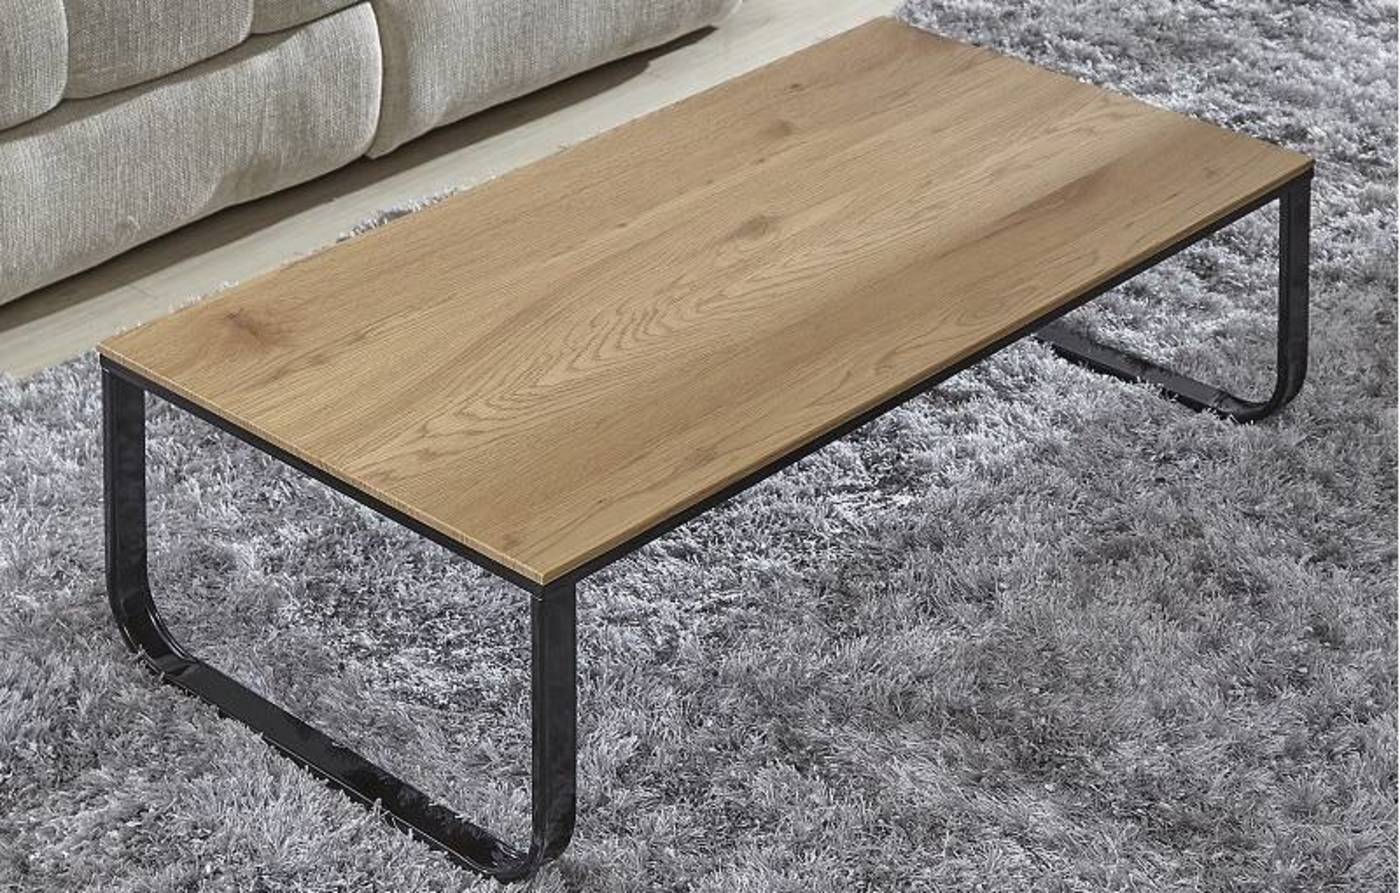 שולחן סלון עץ